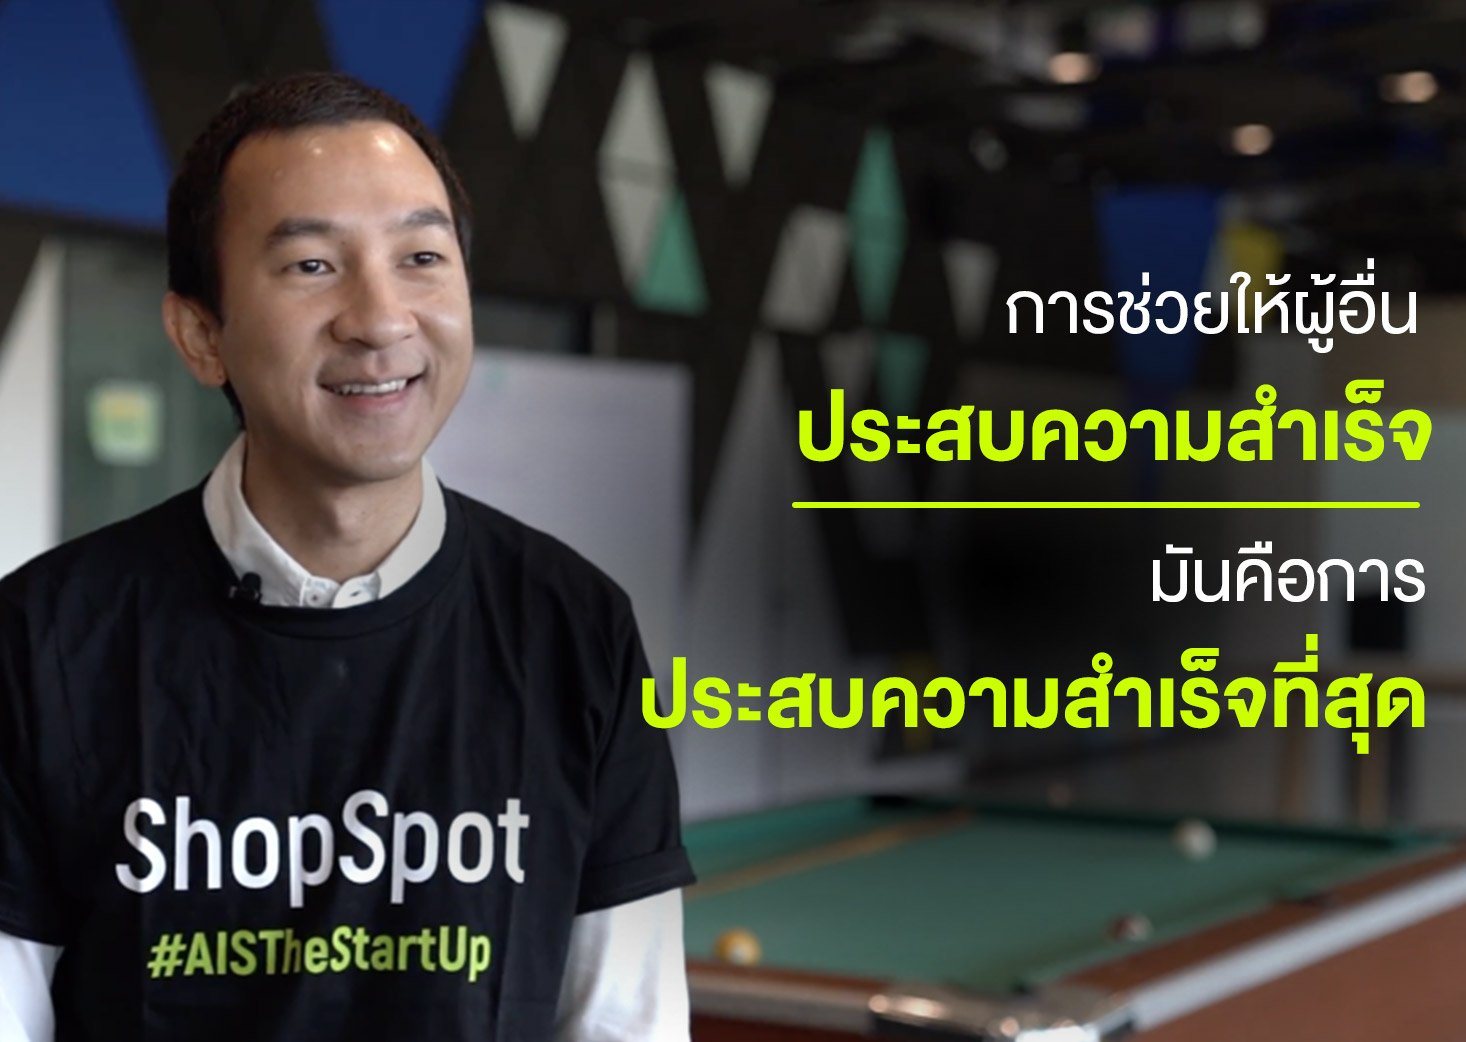 ข้อคิด ข้อแนะนำสำหรับ Startup Thailand รุ่นใหม่